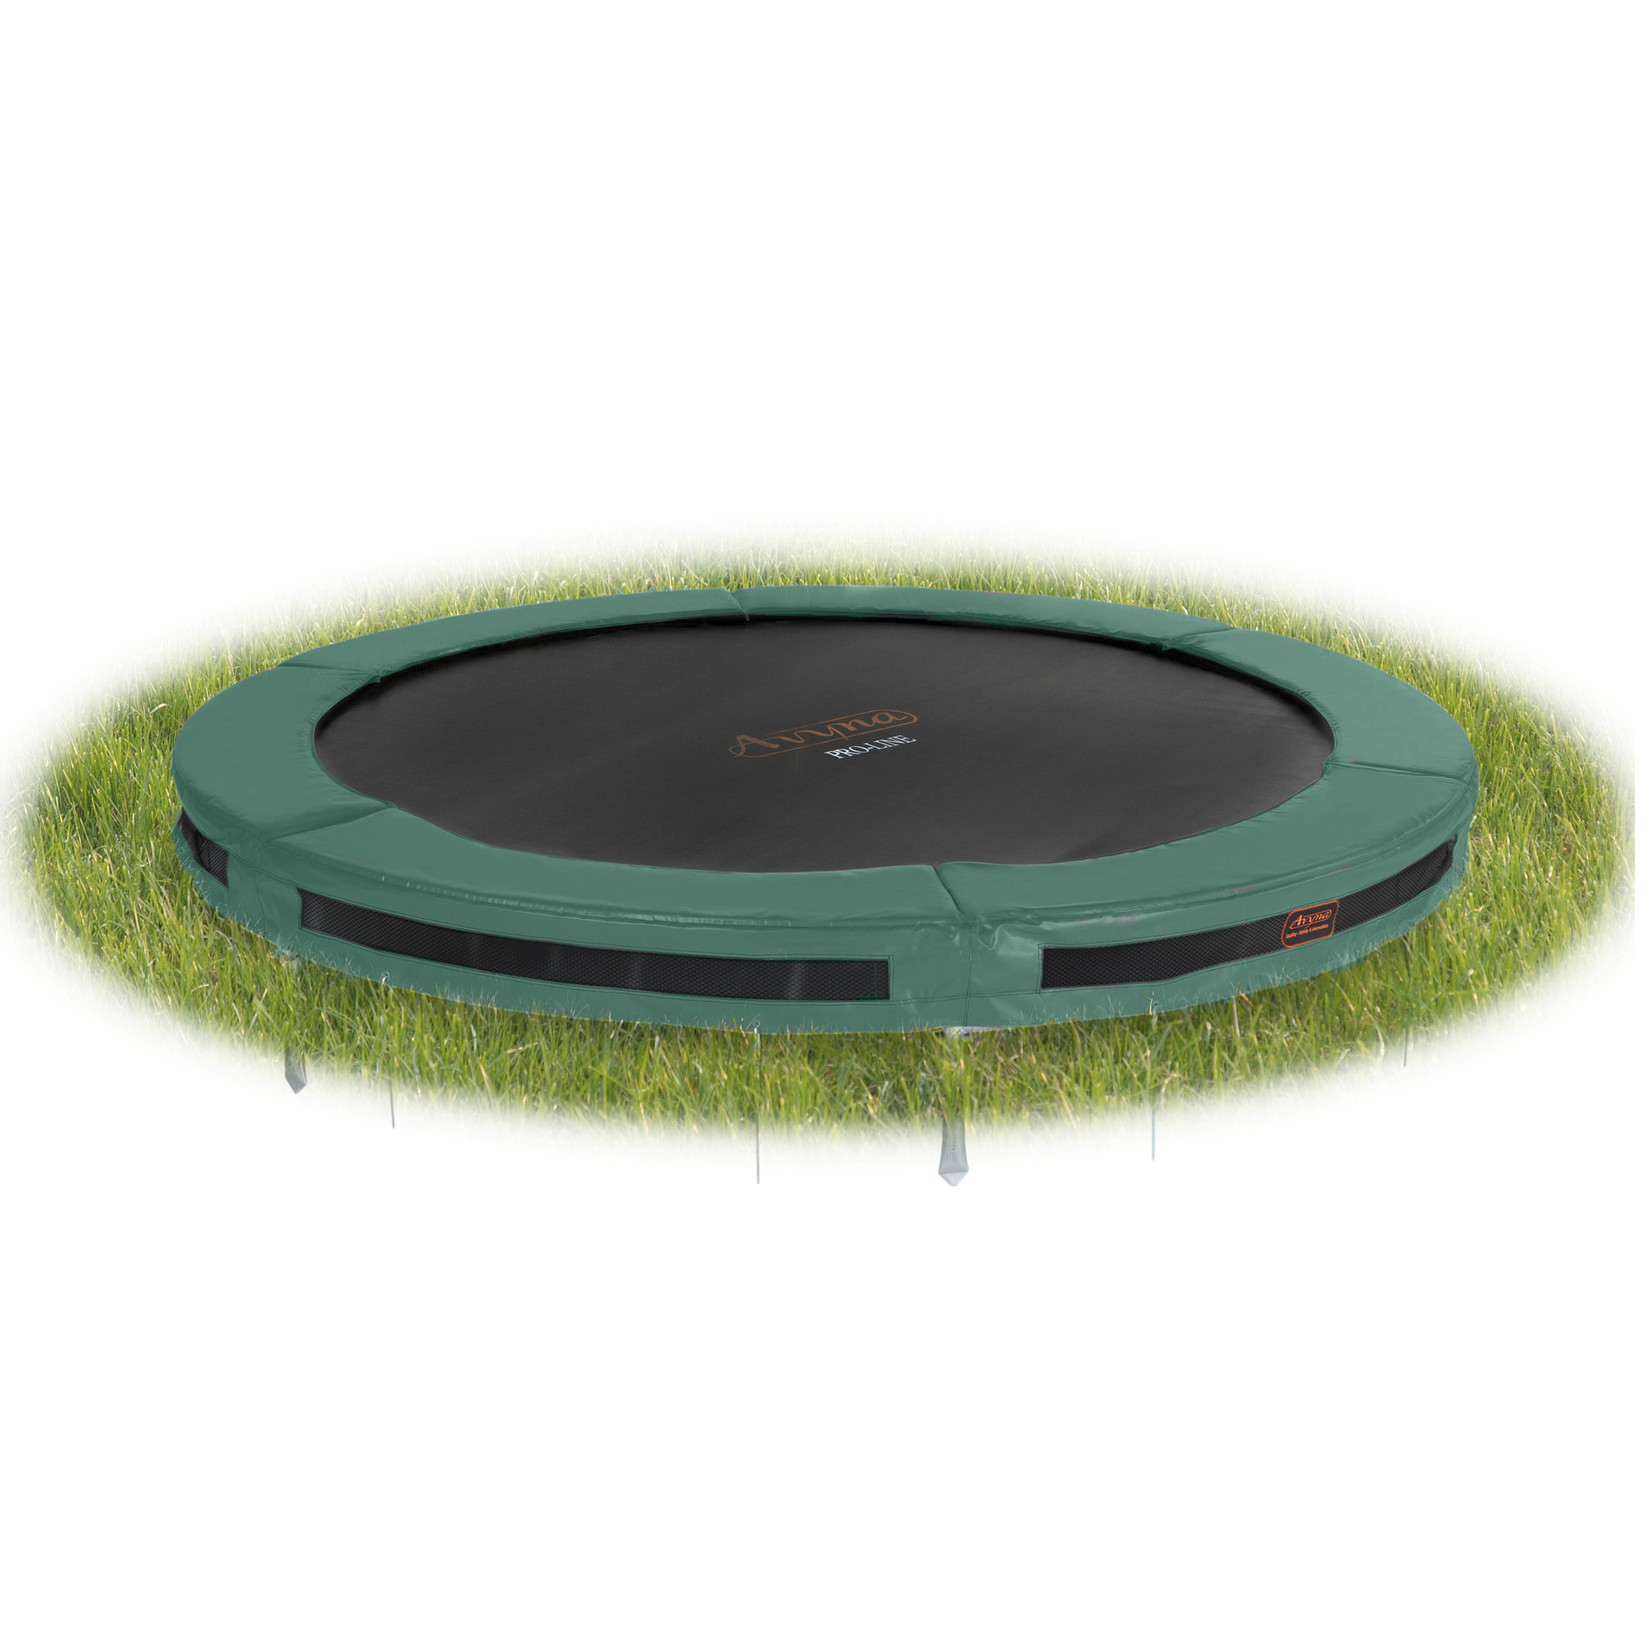 Ronde trampoline van Avyna voor in de grond, Inground Ø 430 cm